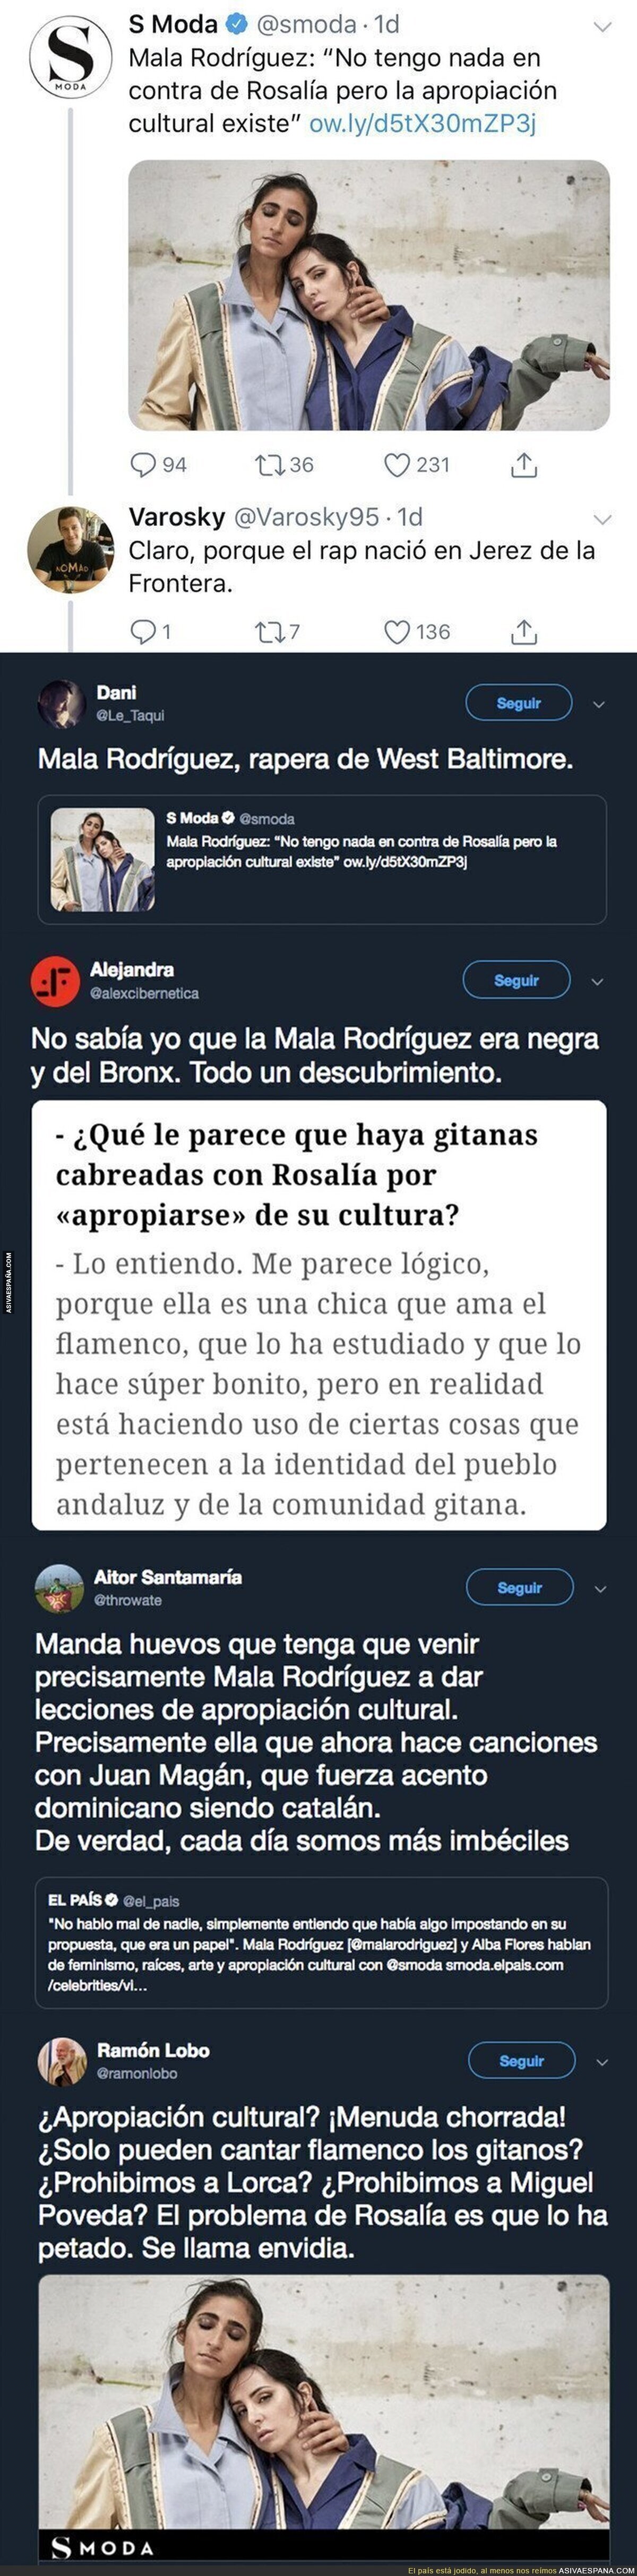 La Mala Rodríguez sigue en su cruzada contra Rosalía y le pegan una respuesta inesperada